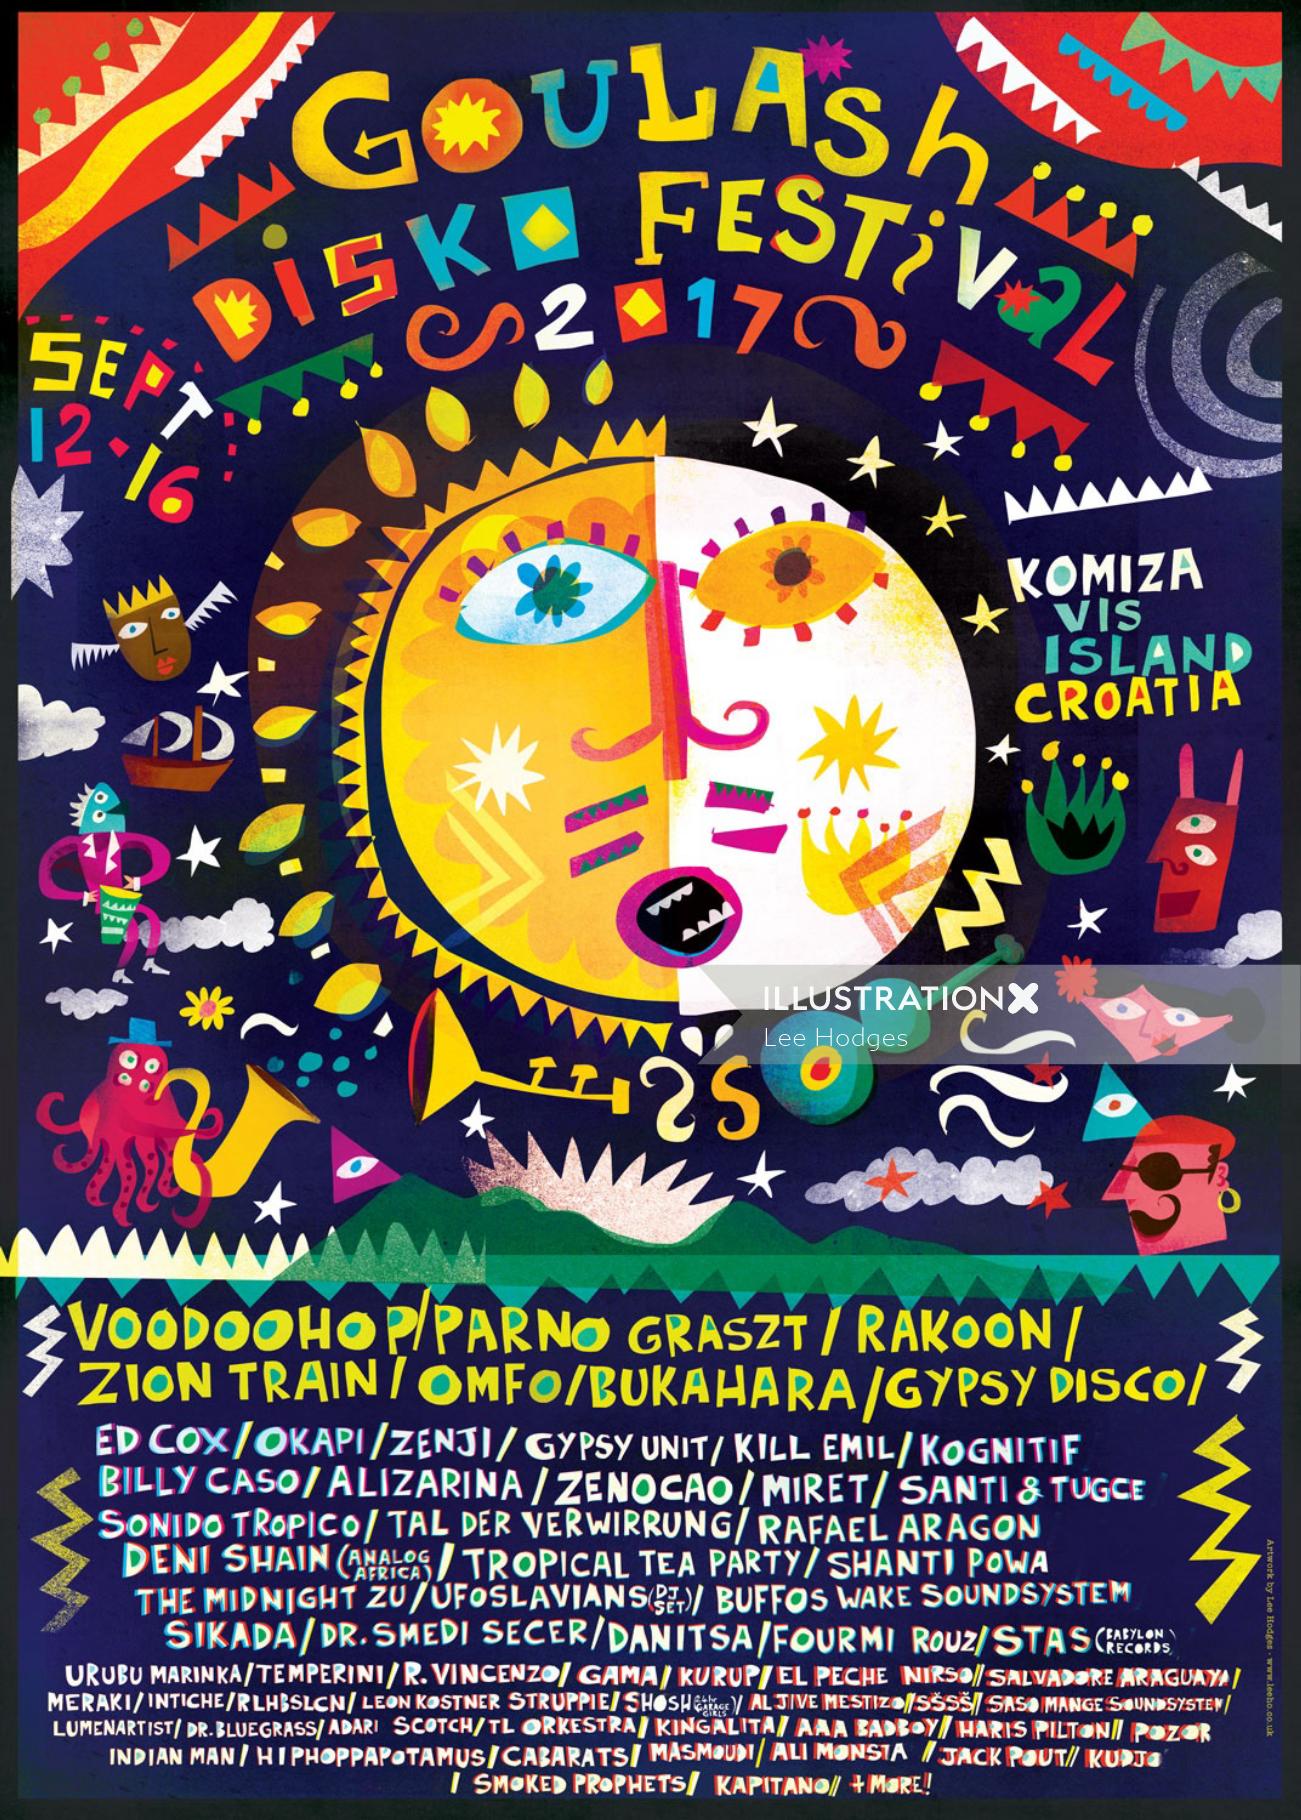 Ilustração da capa de música do Goulash Disko Festival